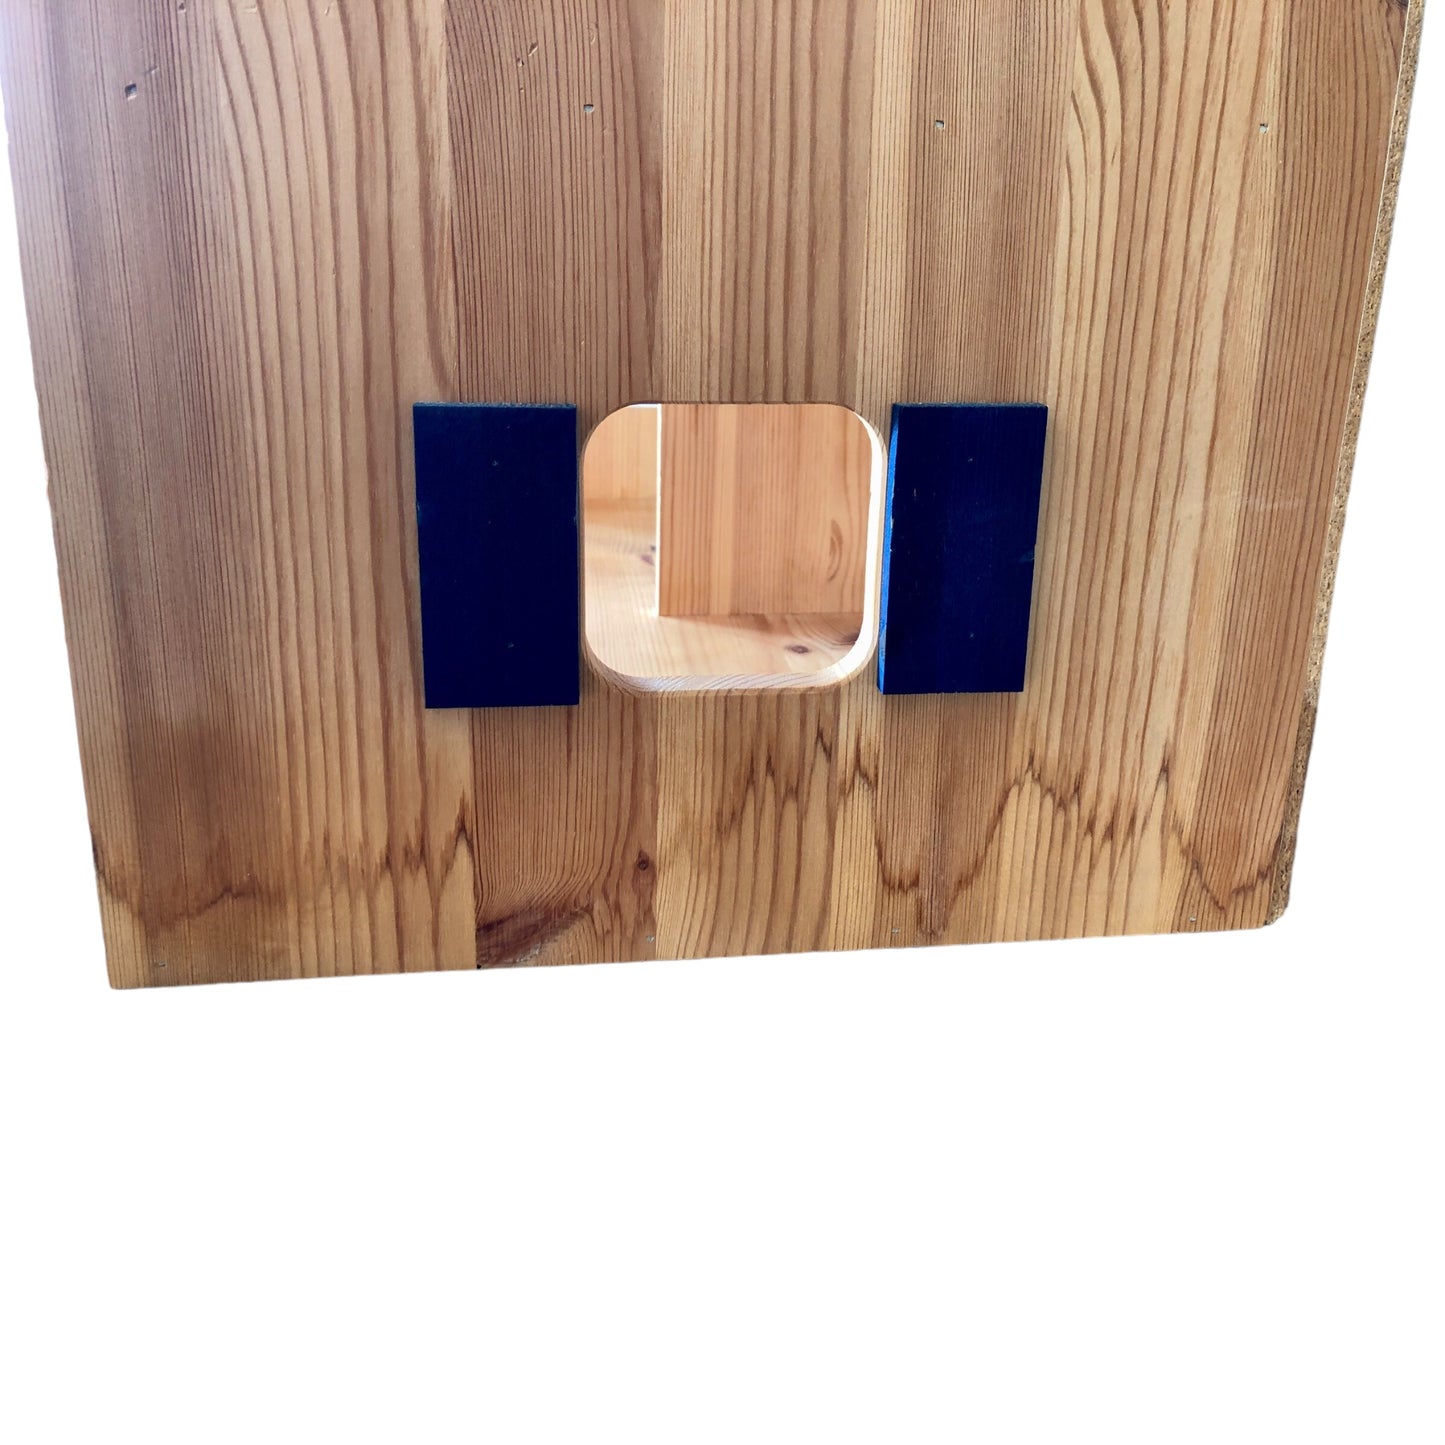 Spielba - Maison en bois au toit bleu avec accessoires